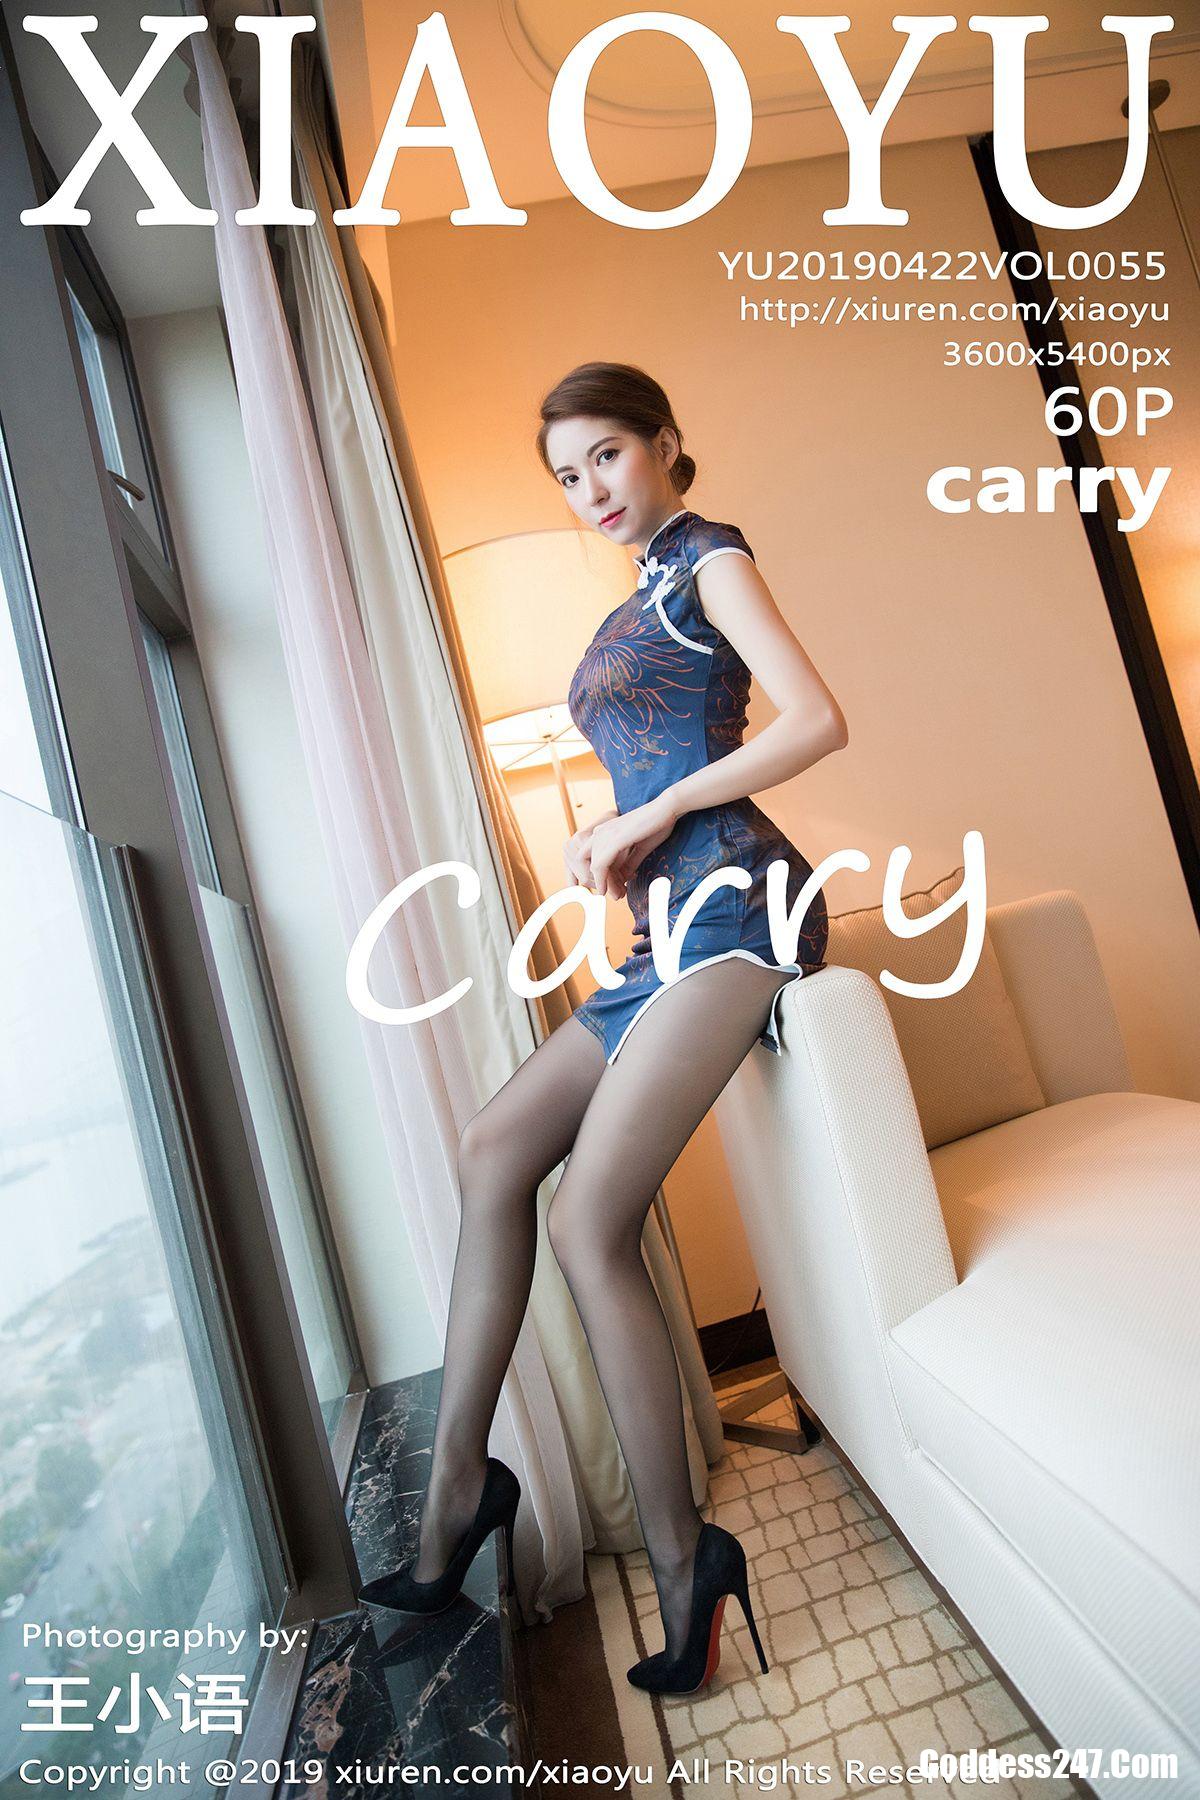 XiaoYu Vol.055 Carry 1